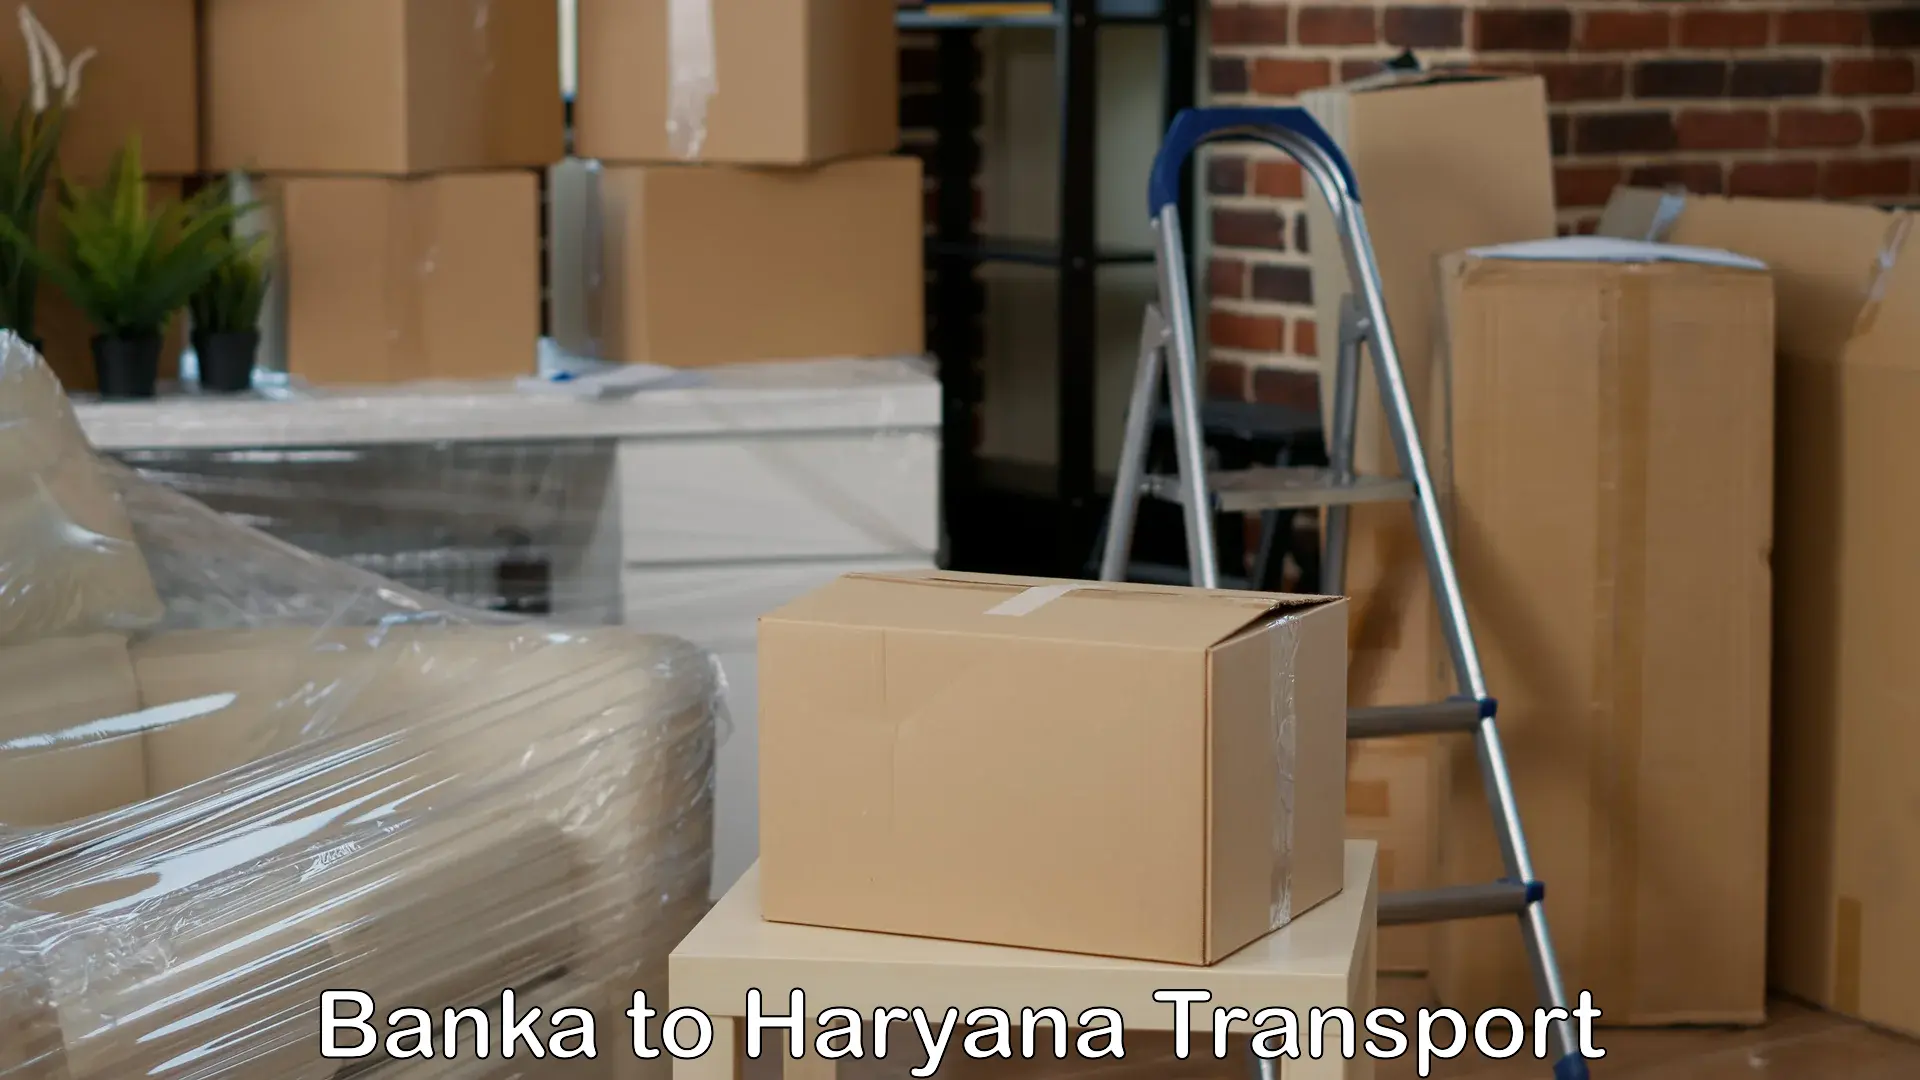 Truck transport companies in India Banka to IIIT Sonepat